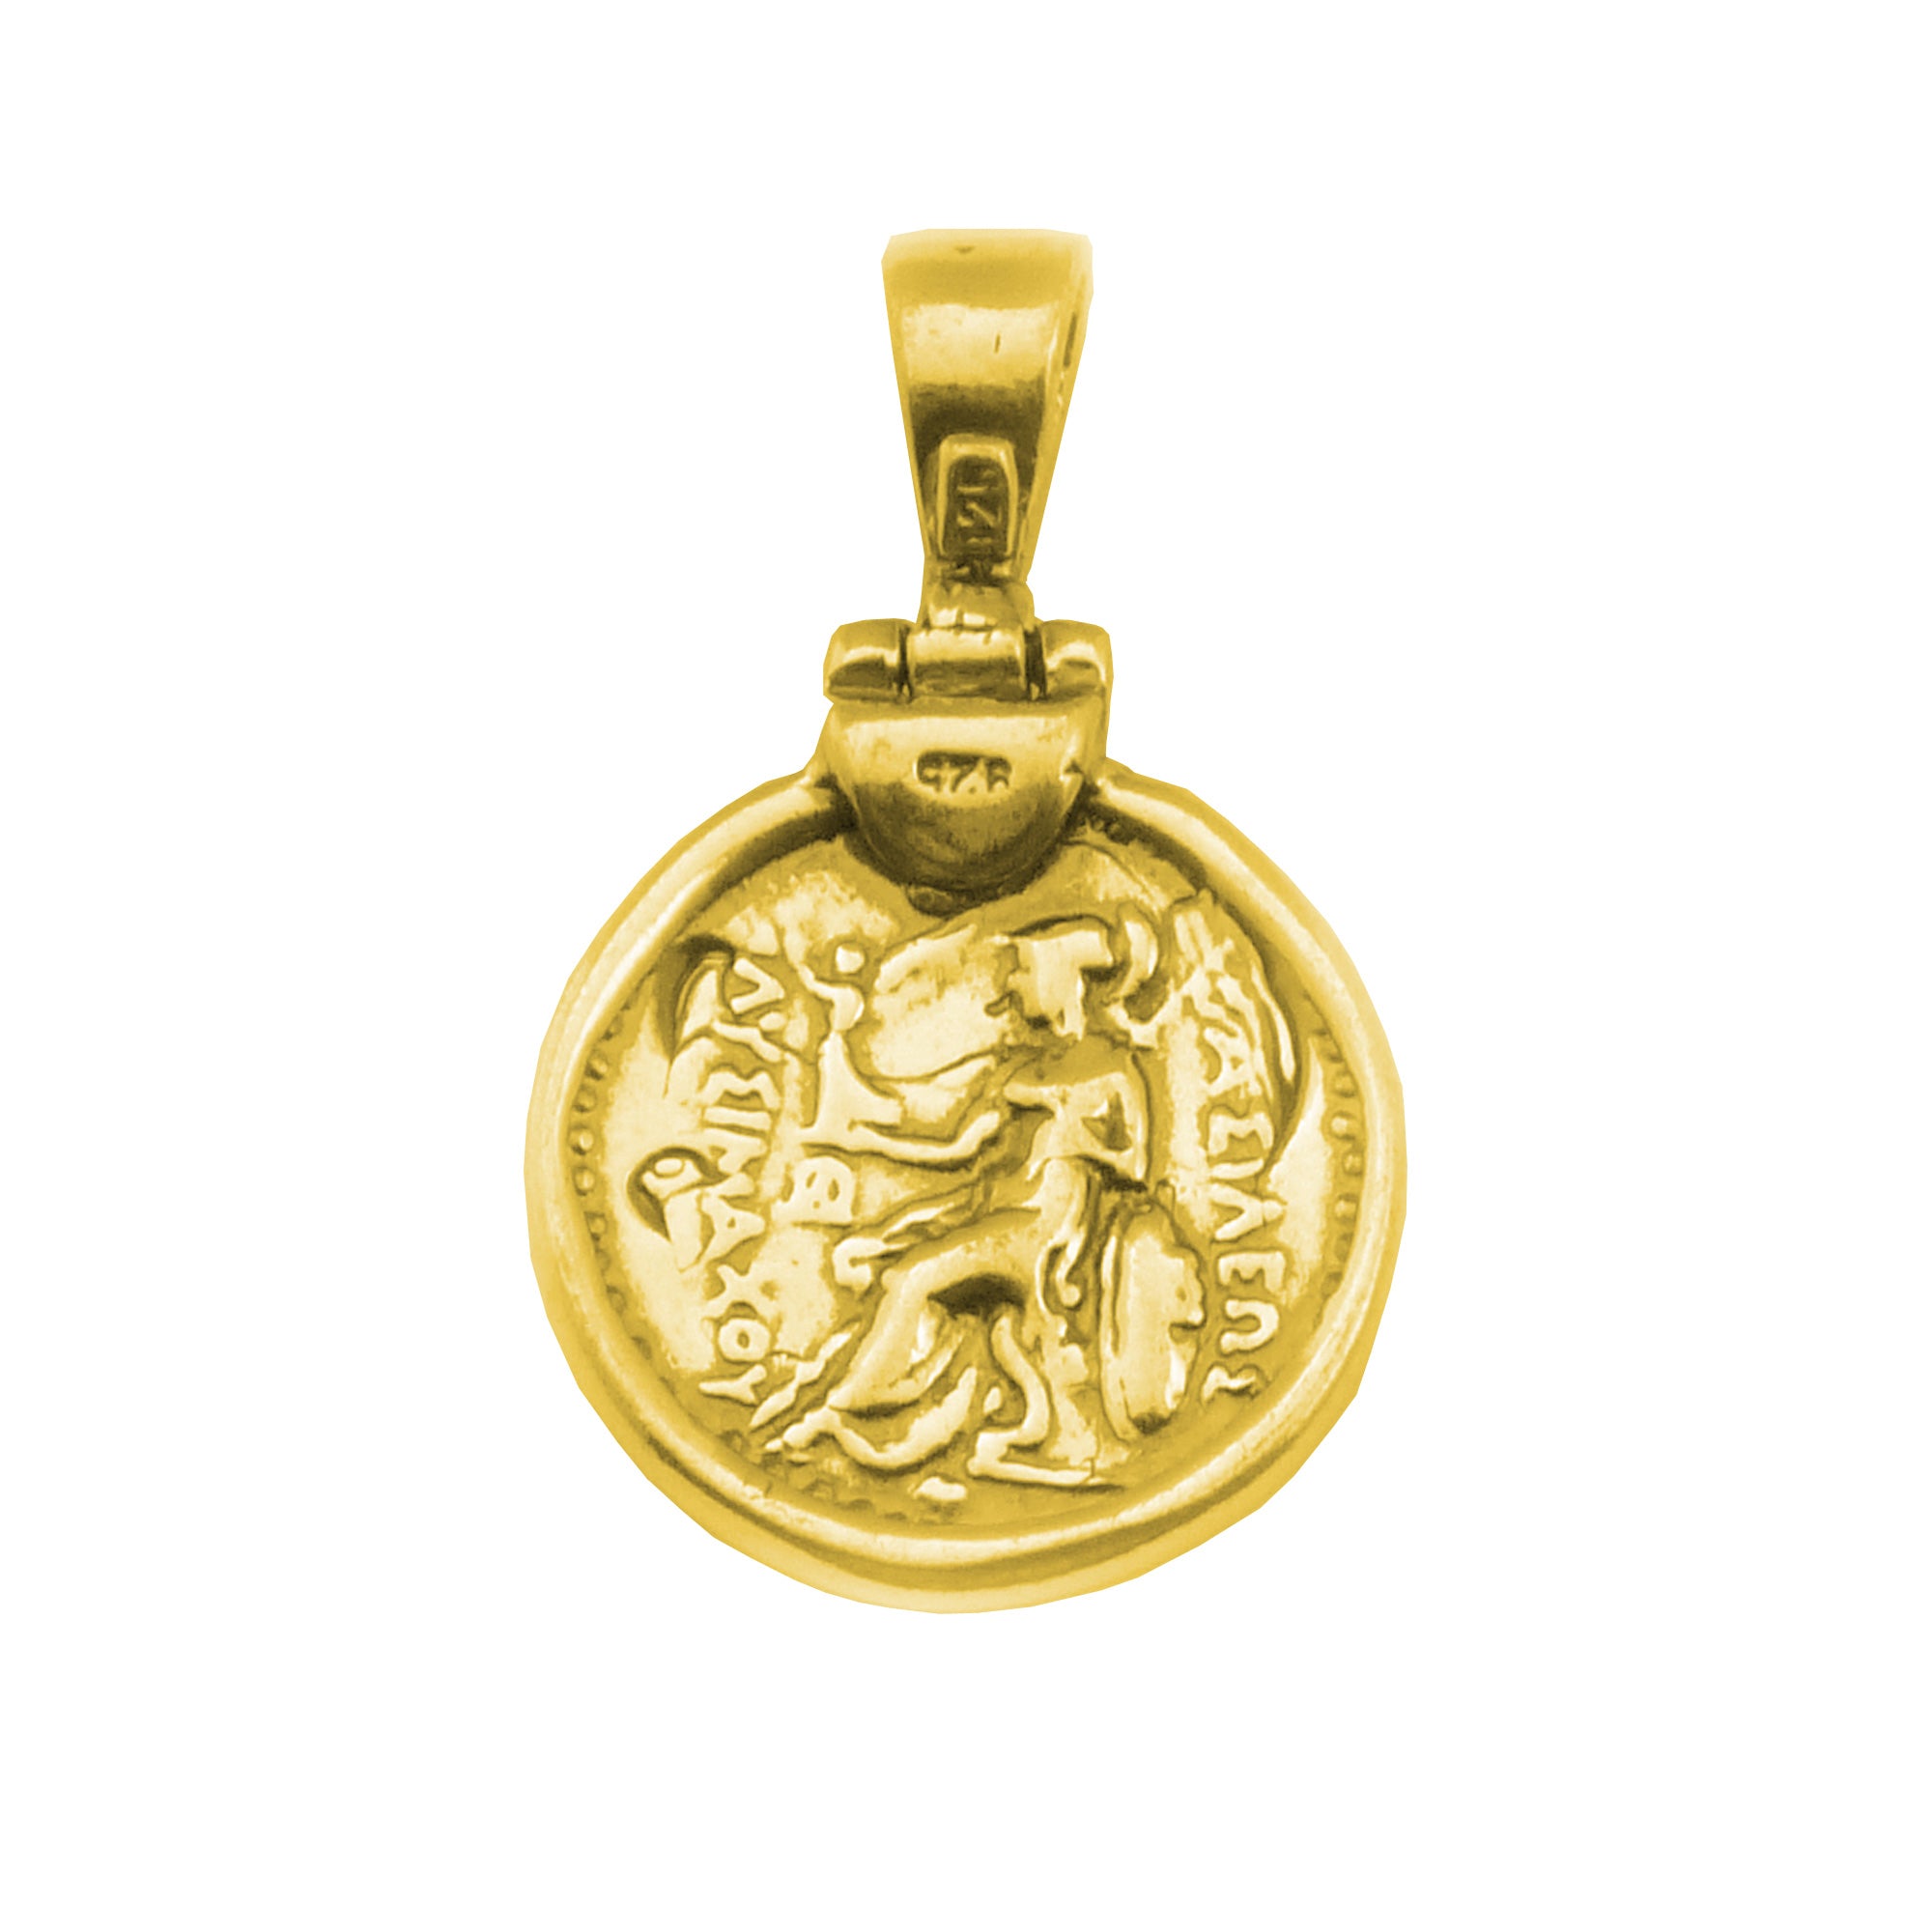 Ciondolo in argento sterling placcato oro 18 carati con ciondolo di Alessandro Magno, gioielli di design per uomini e donne